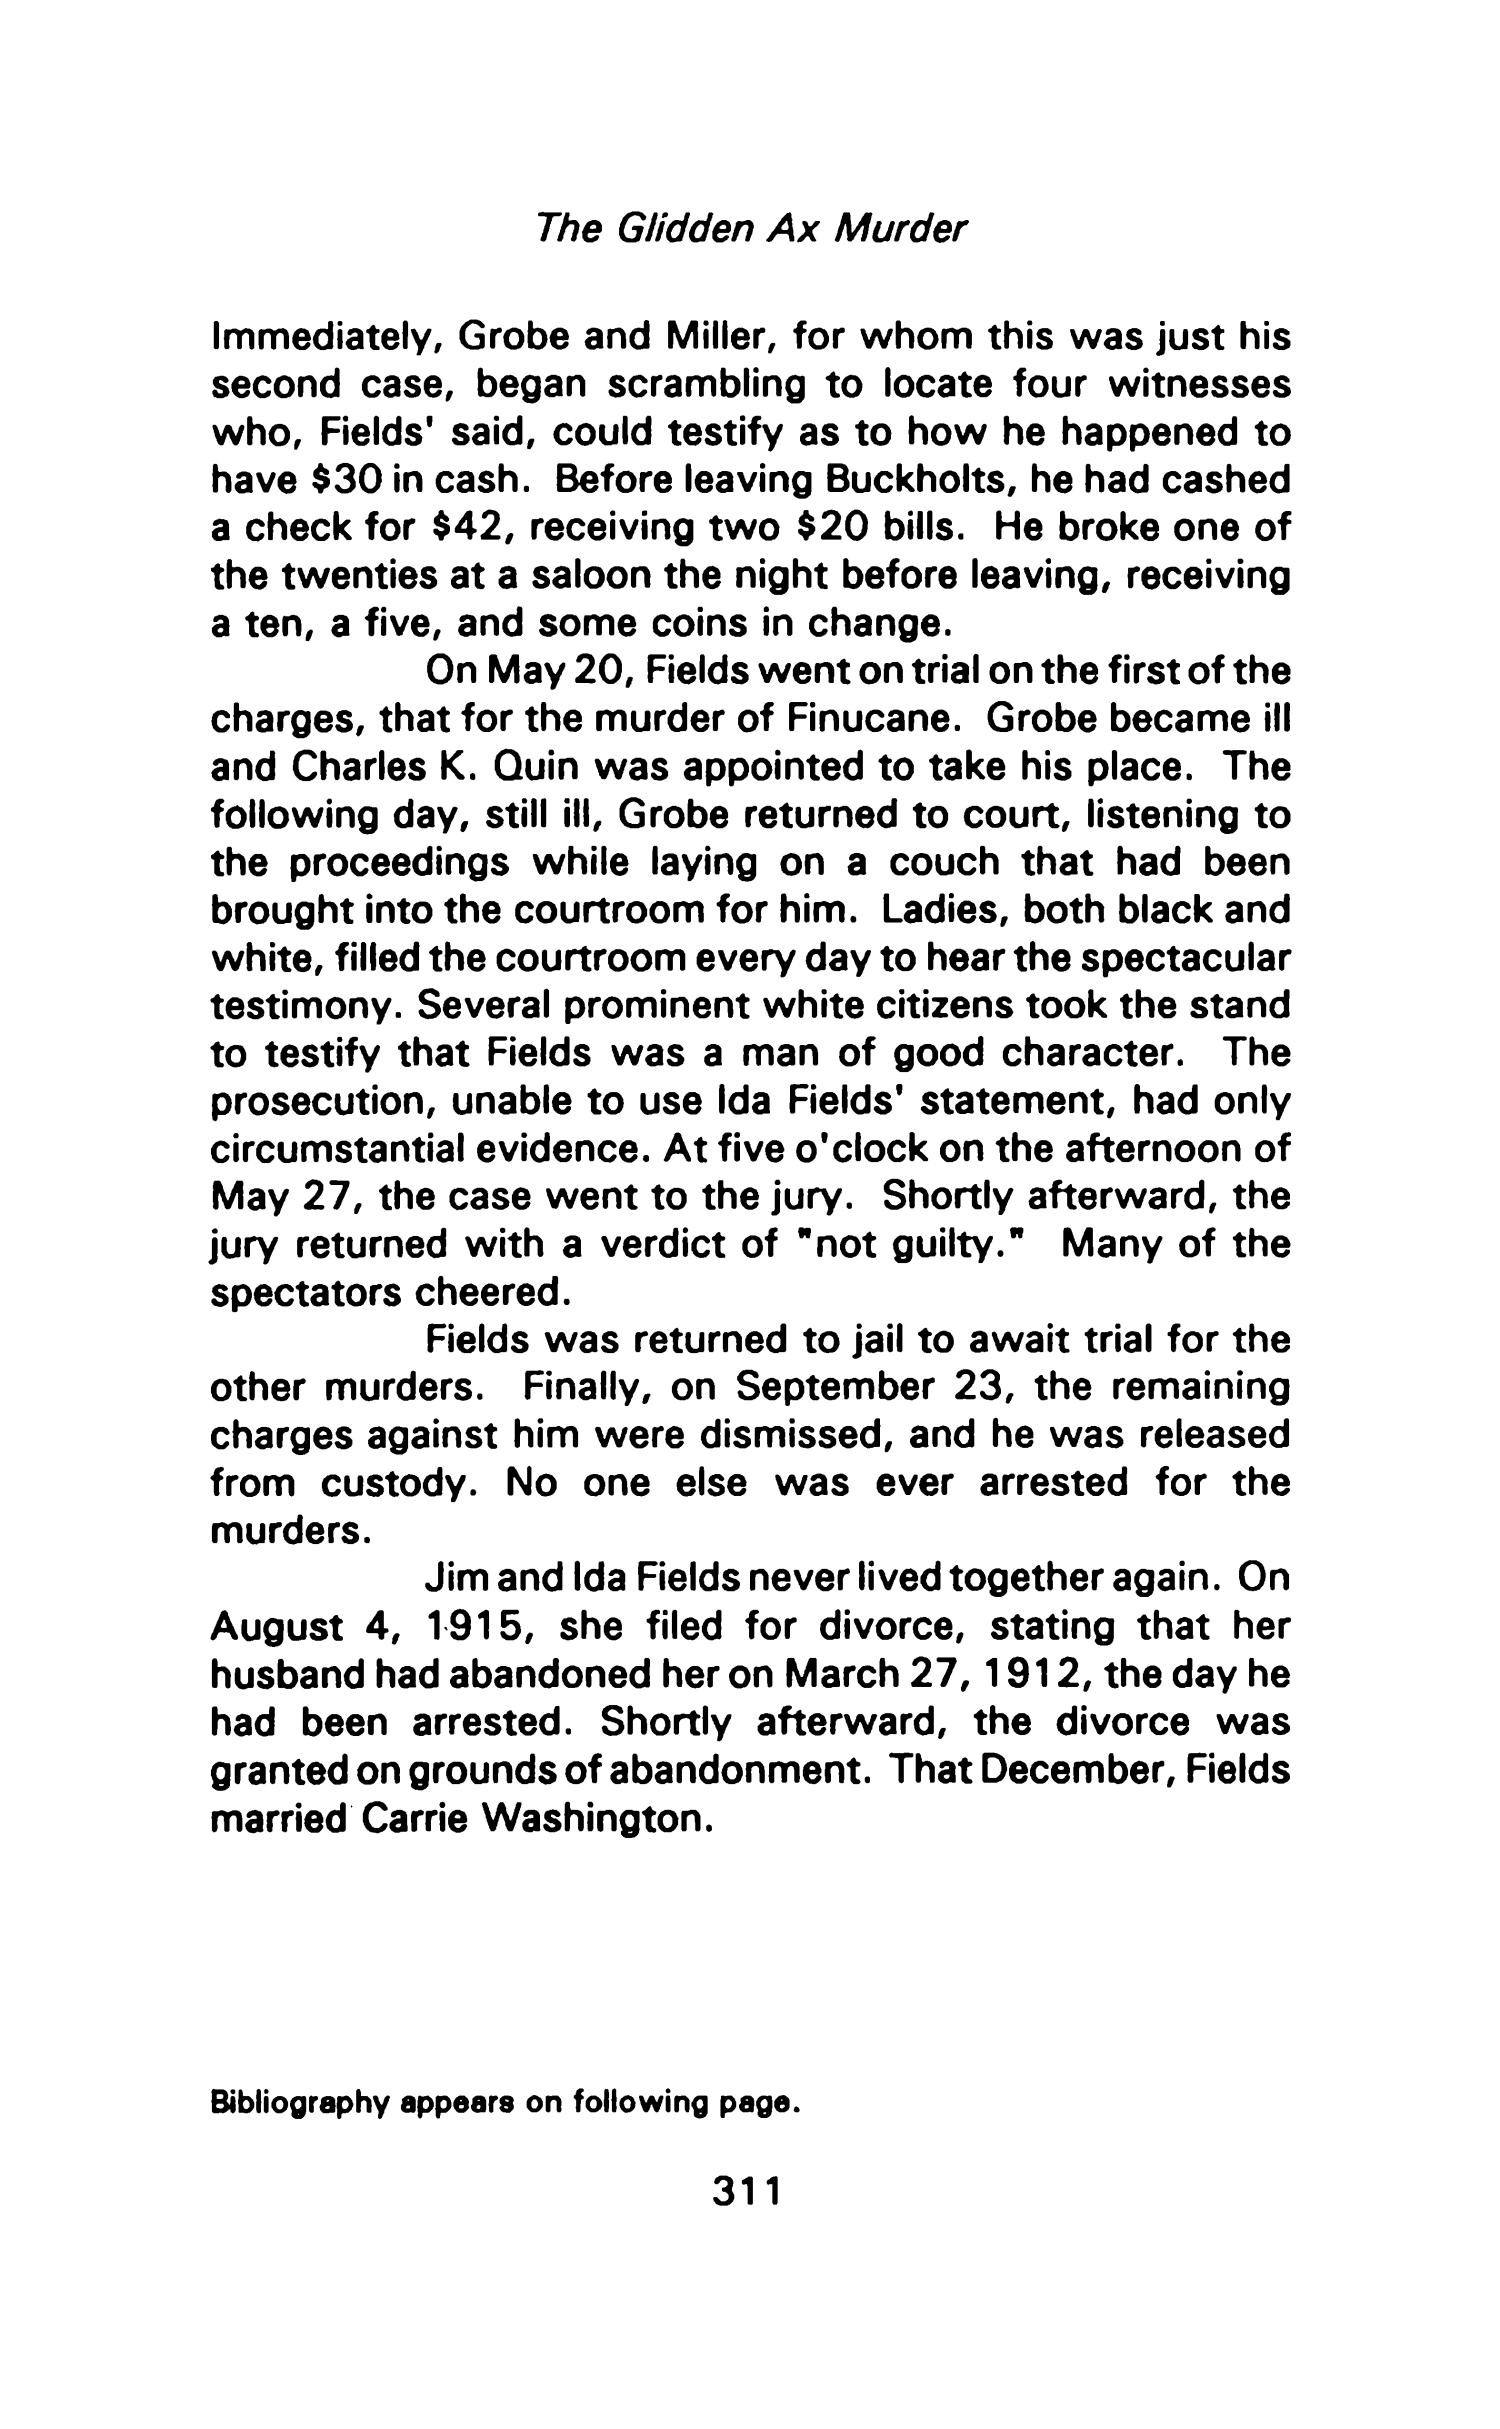 Nesbitt Memorial Library Journal, Volume 1, Number 10, September 1991
                                                
                                                    311
                                                